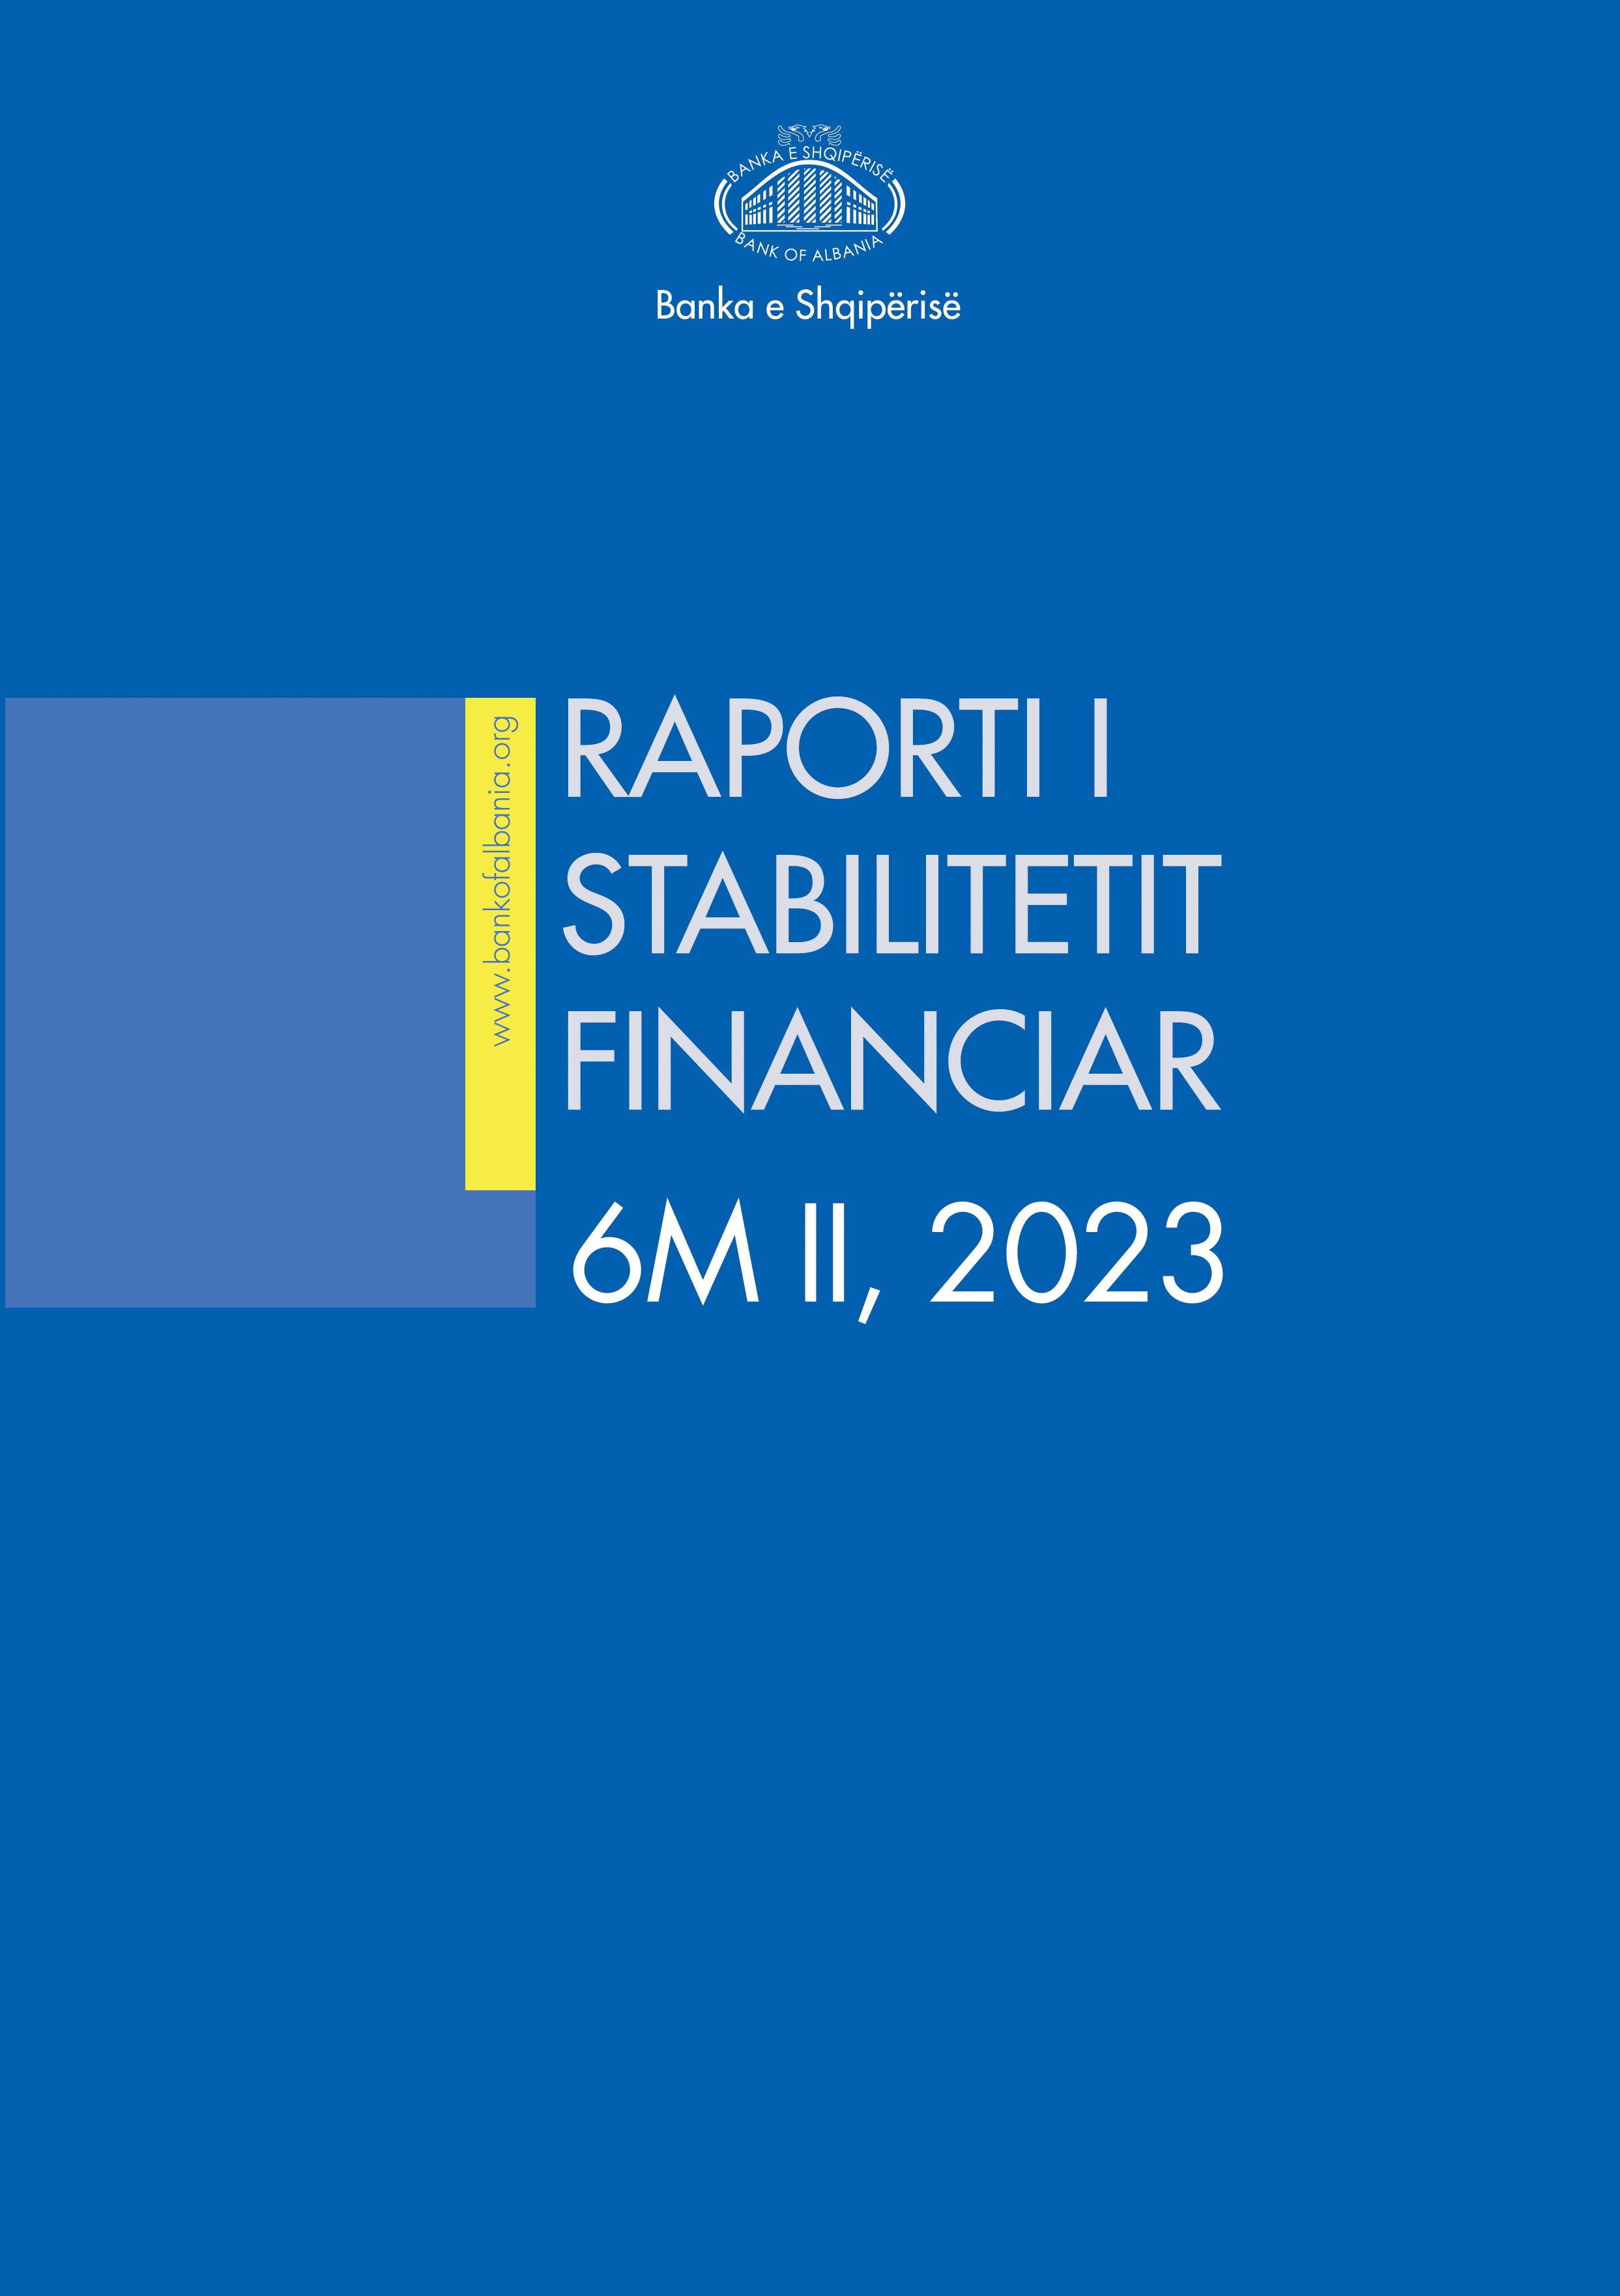 Raporti i Stabilitetit Financiar për gjashtëmujorin e dytë të vitit 2023